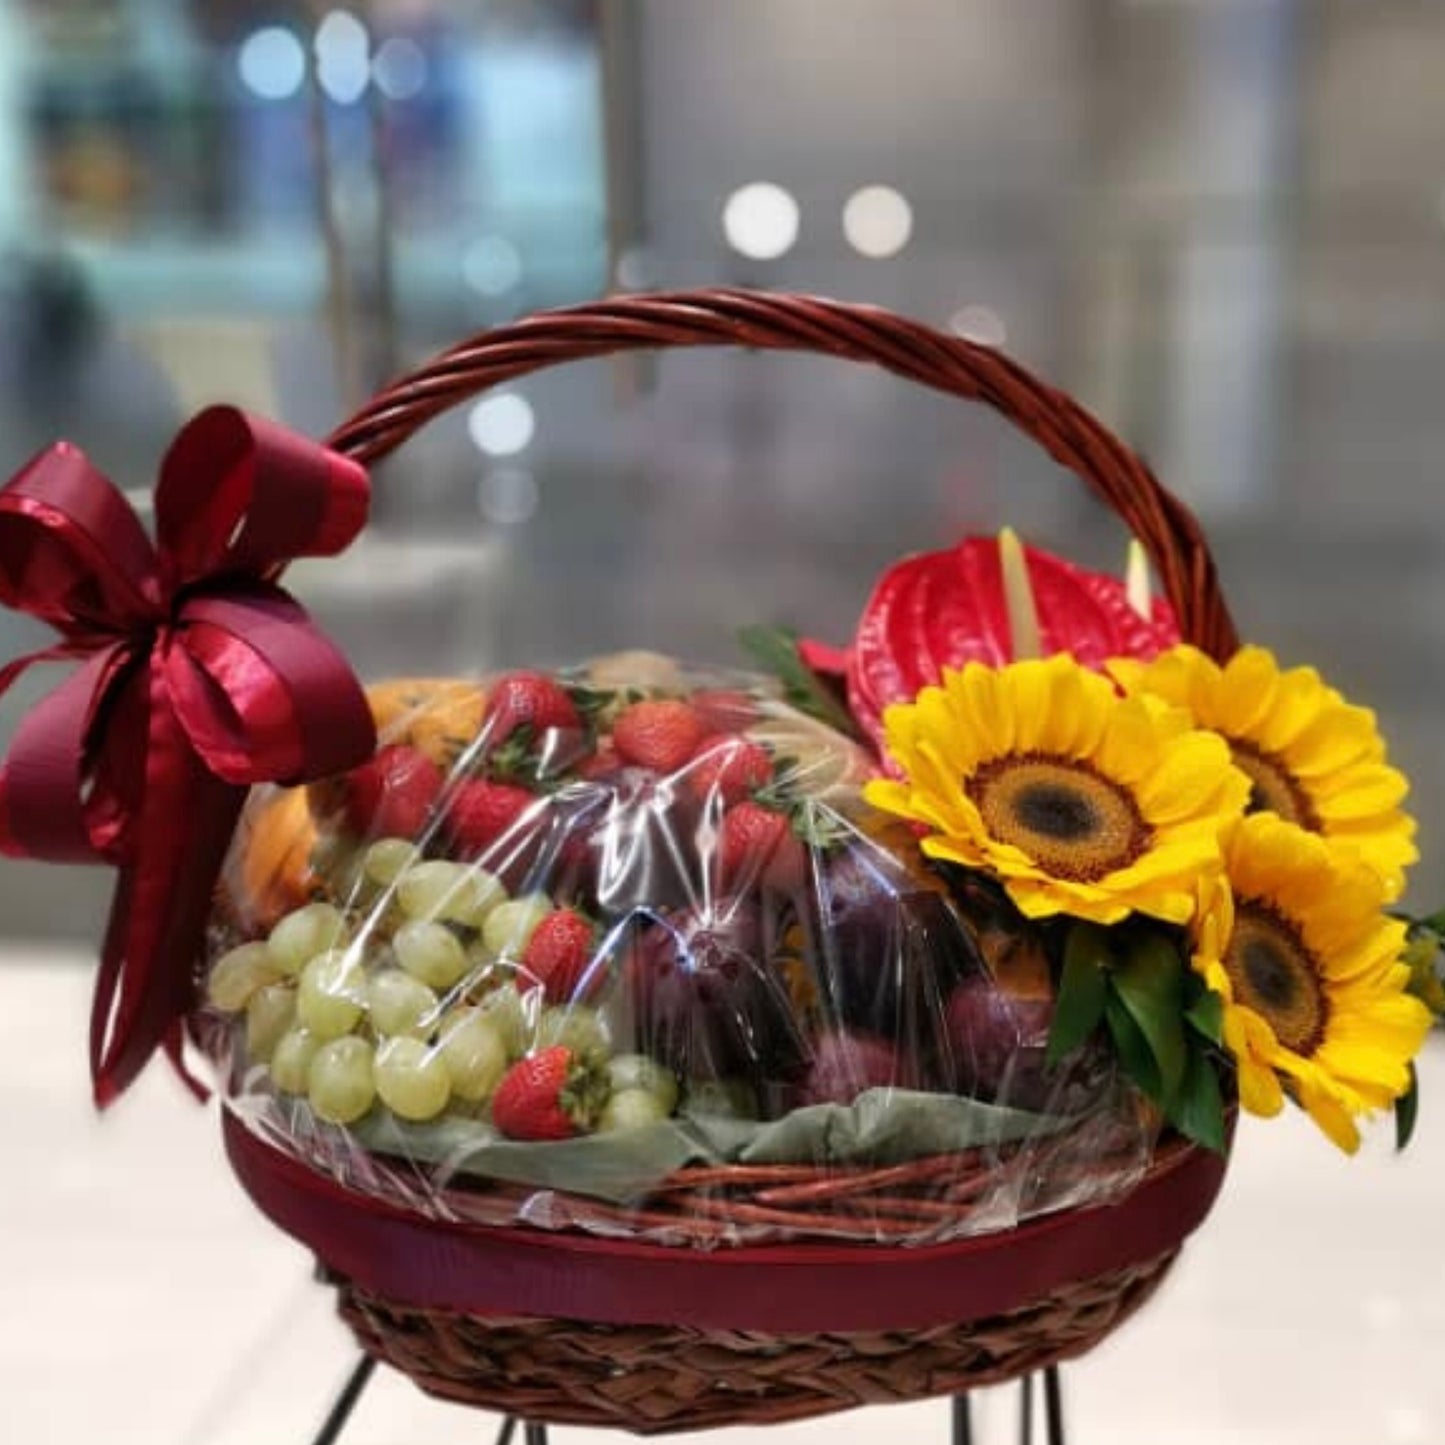 Melonie's Fruit Basket | Fruit Basket